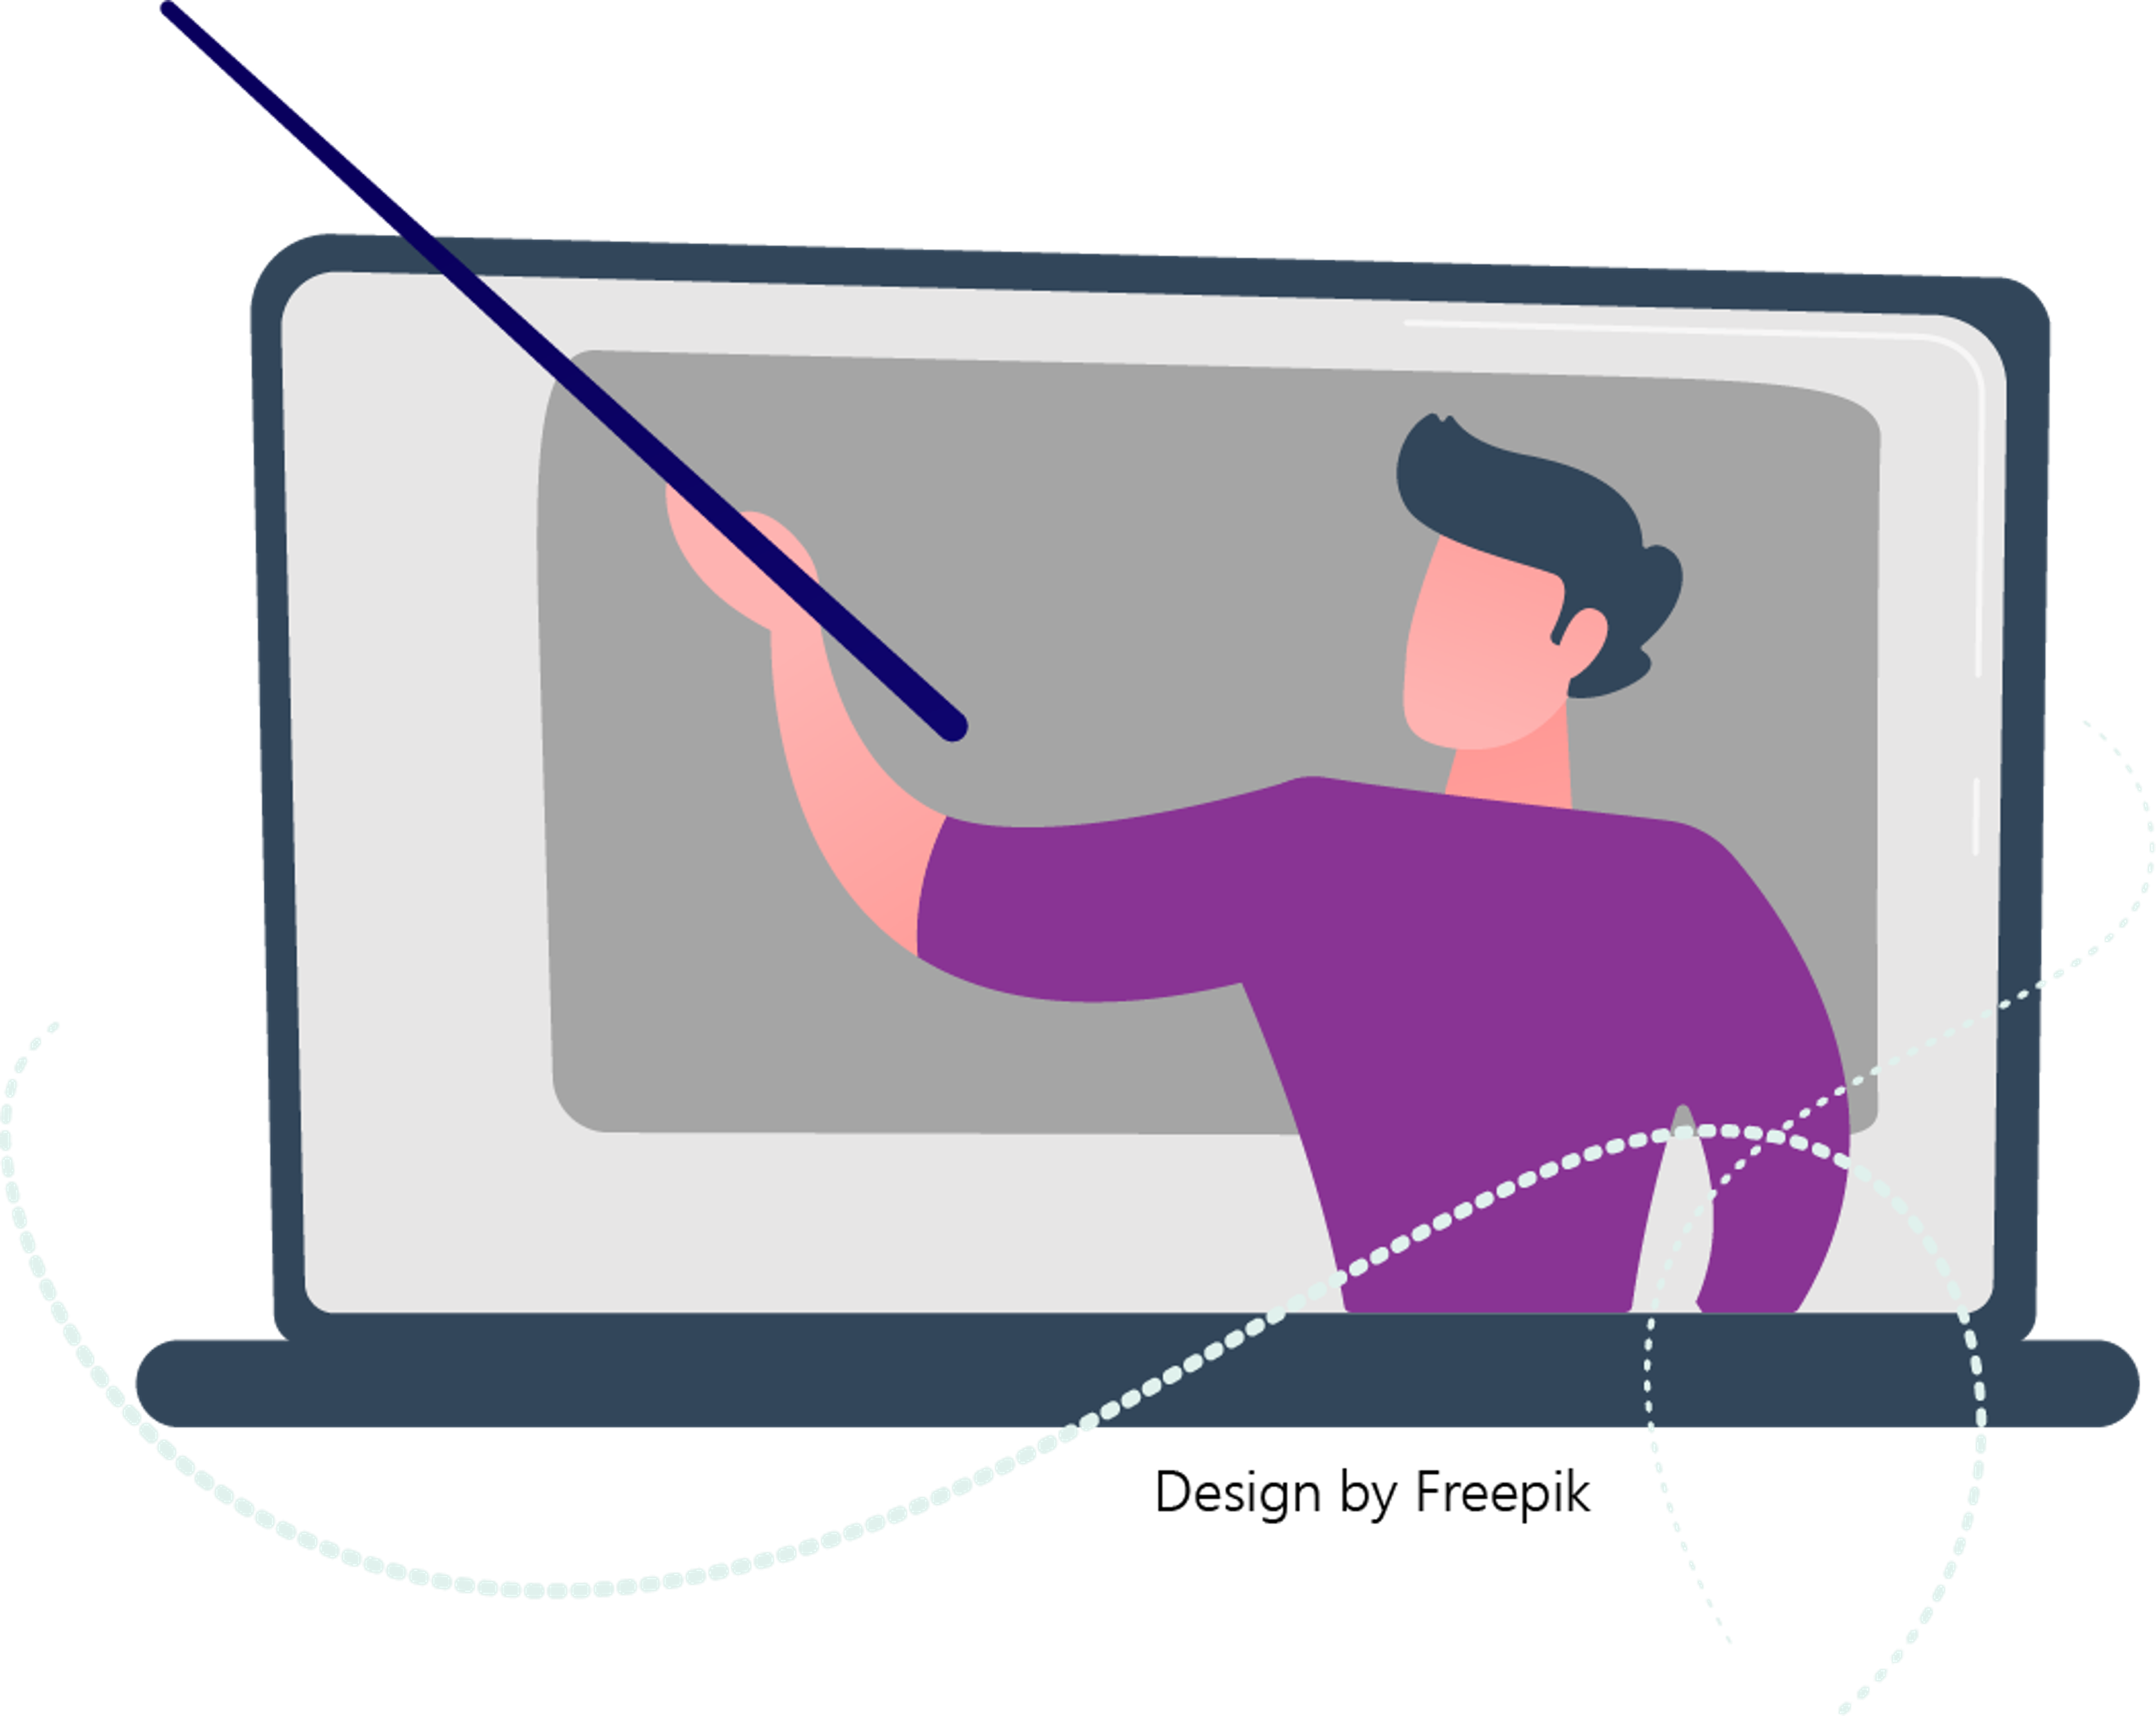 Piirroskuvassa tietokoneen näyttö, josta näkyy karttakeppiä kädessään pitävä henkilö 